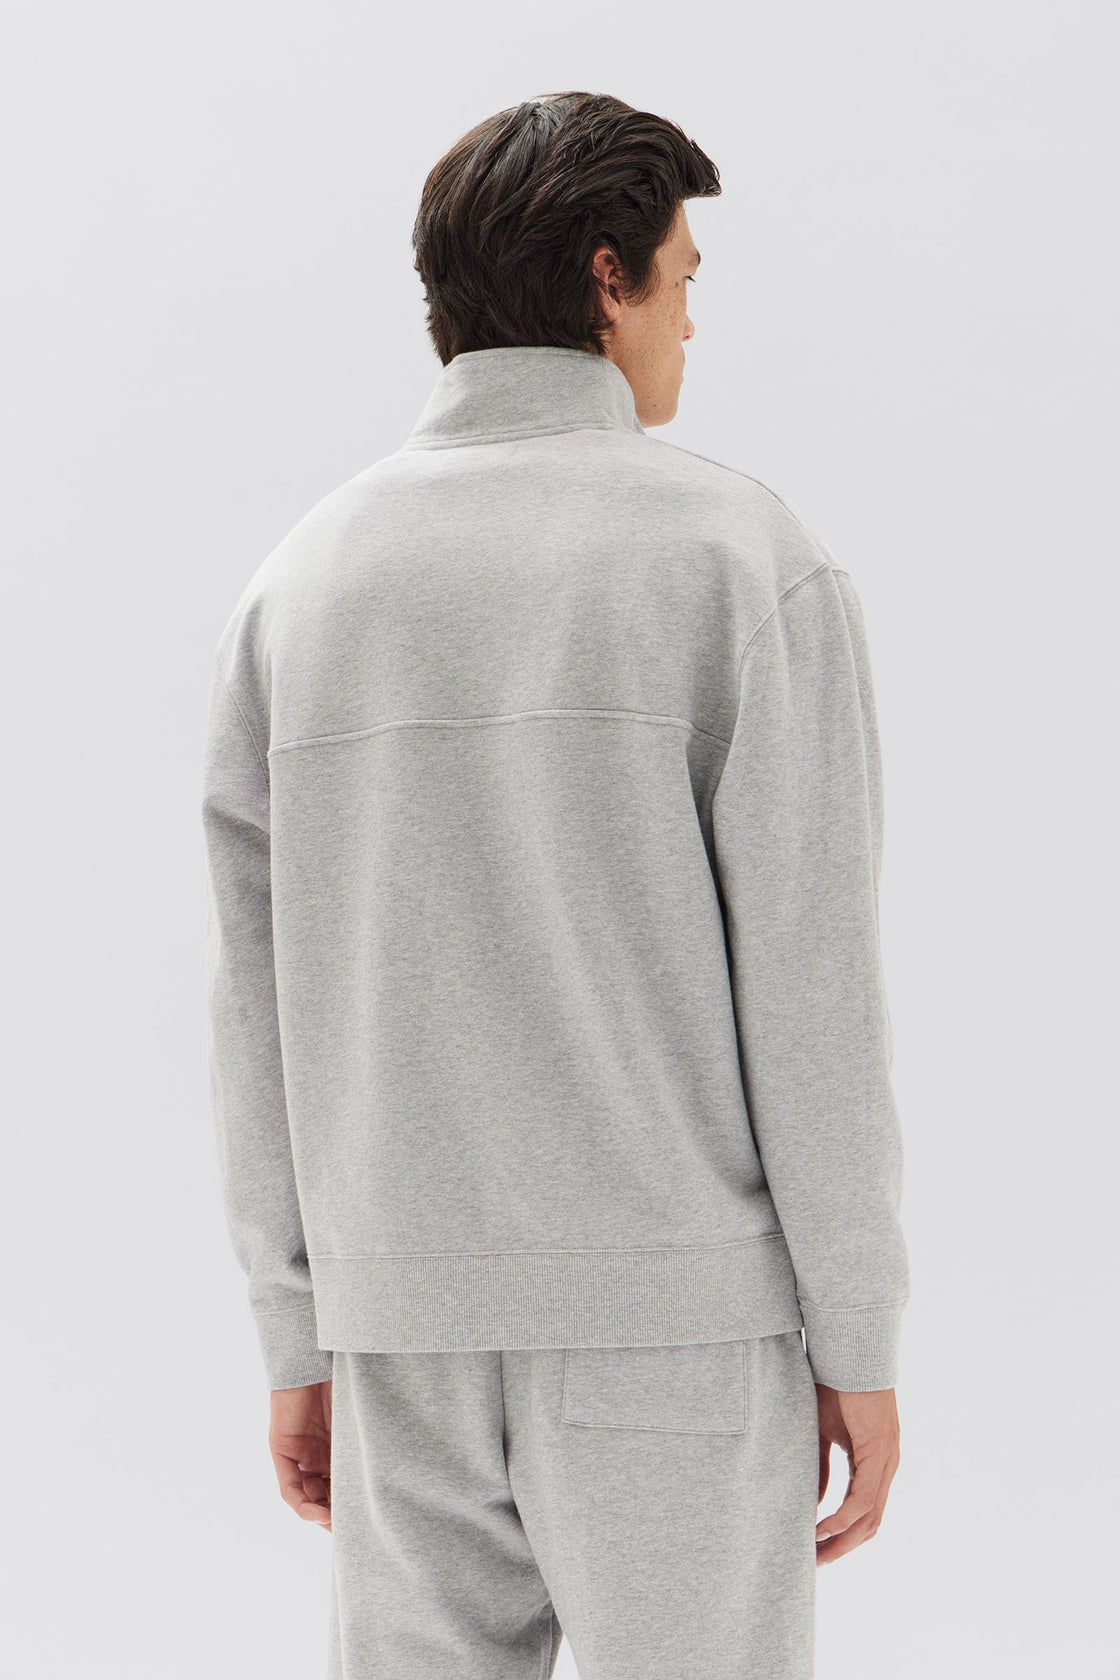 Sawyer Fleece Sweatshirt - Grey